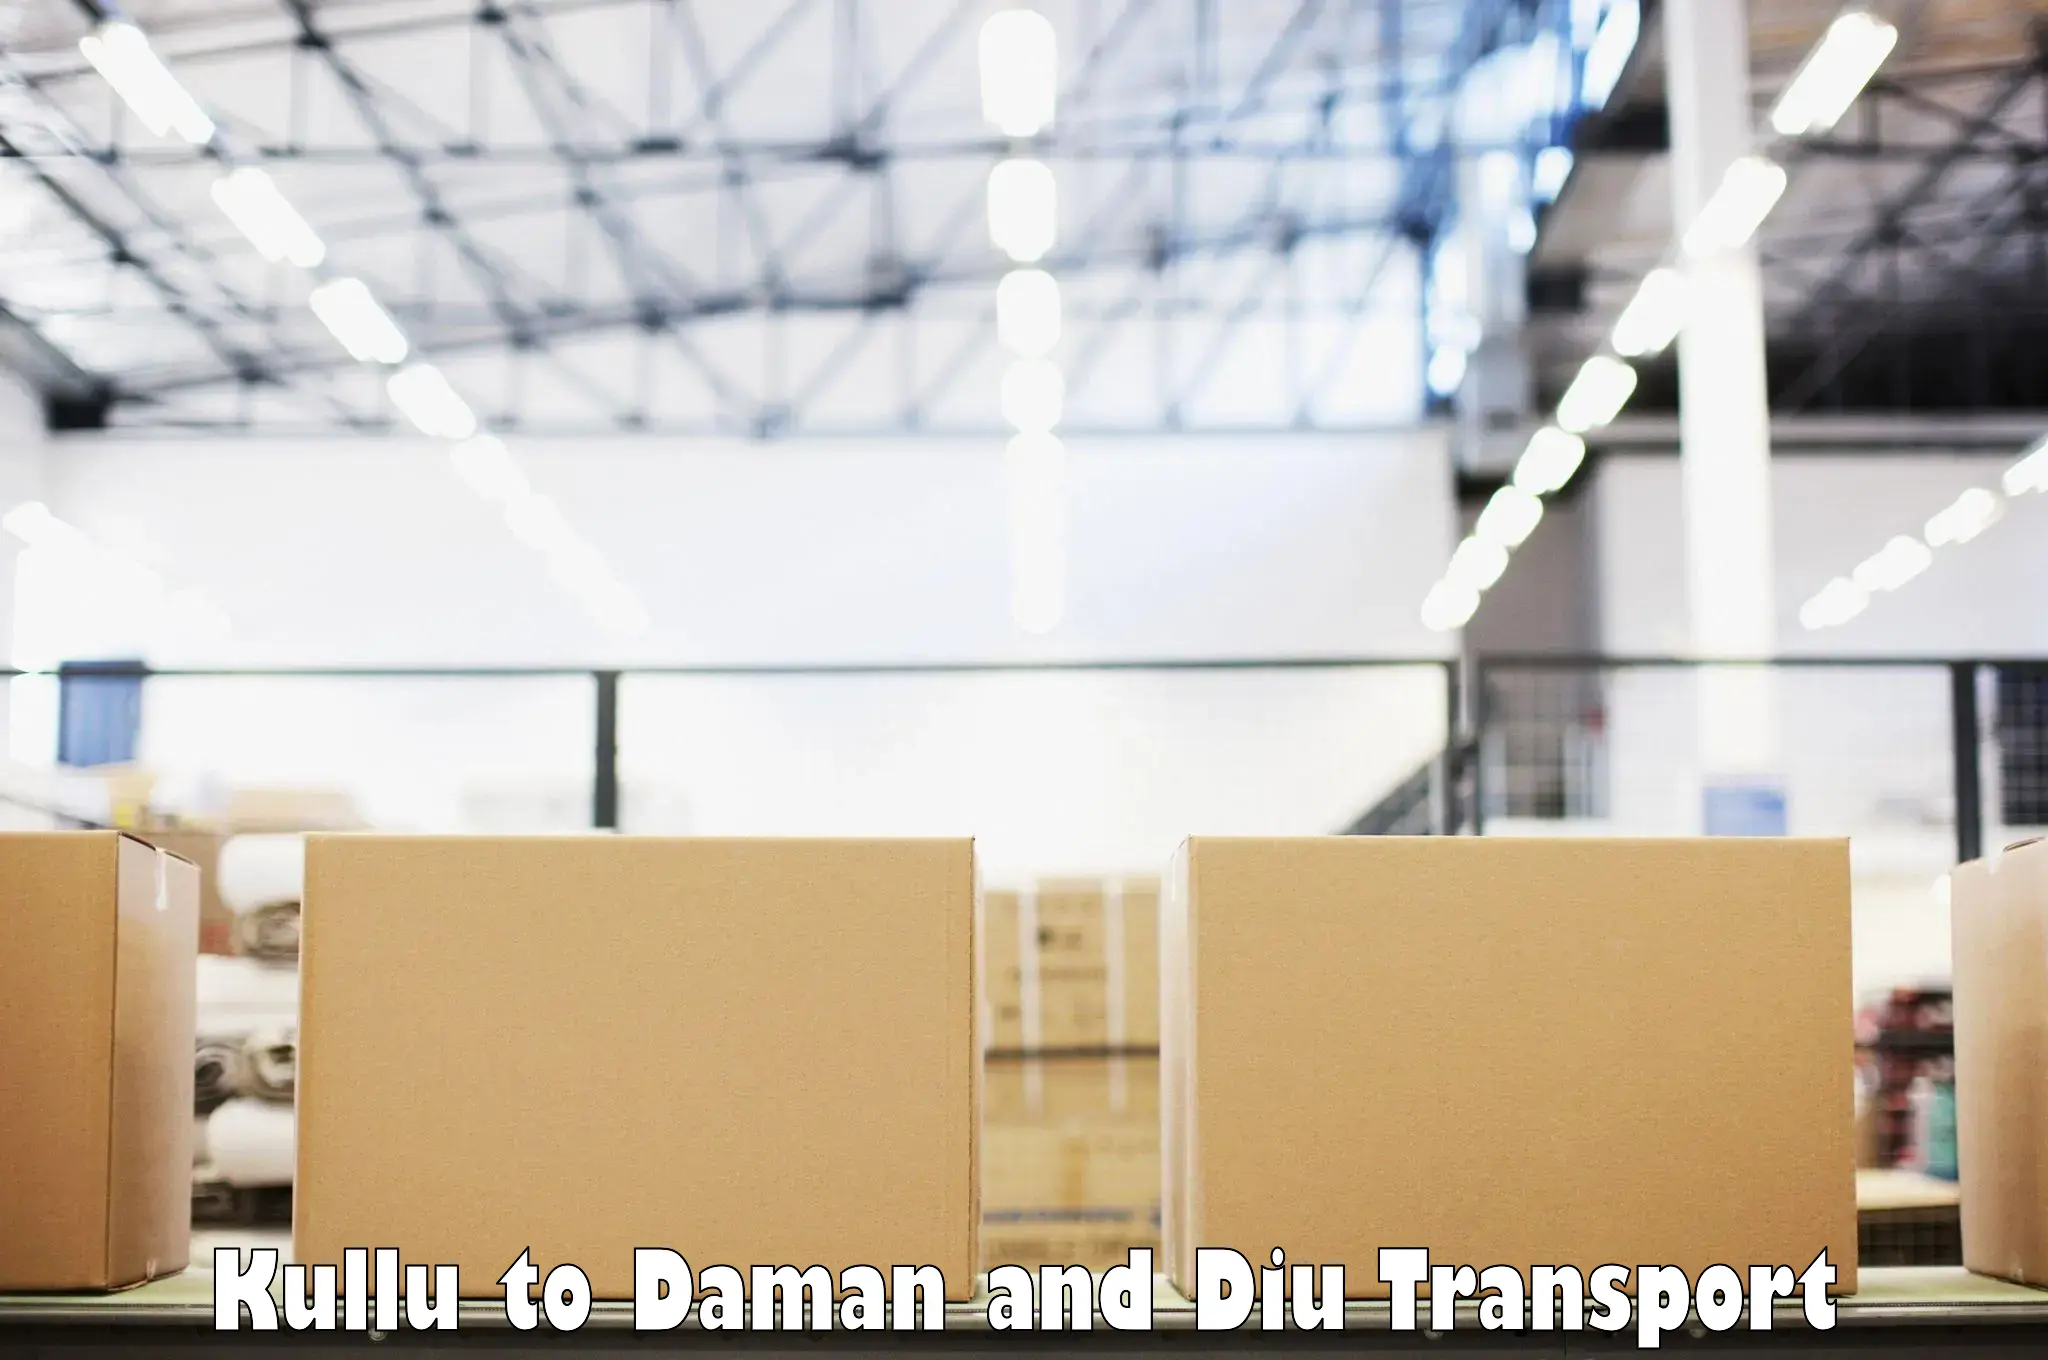 Online transport service Kullu to Daman